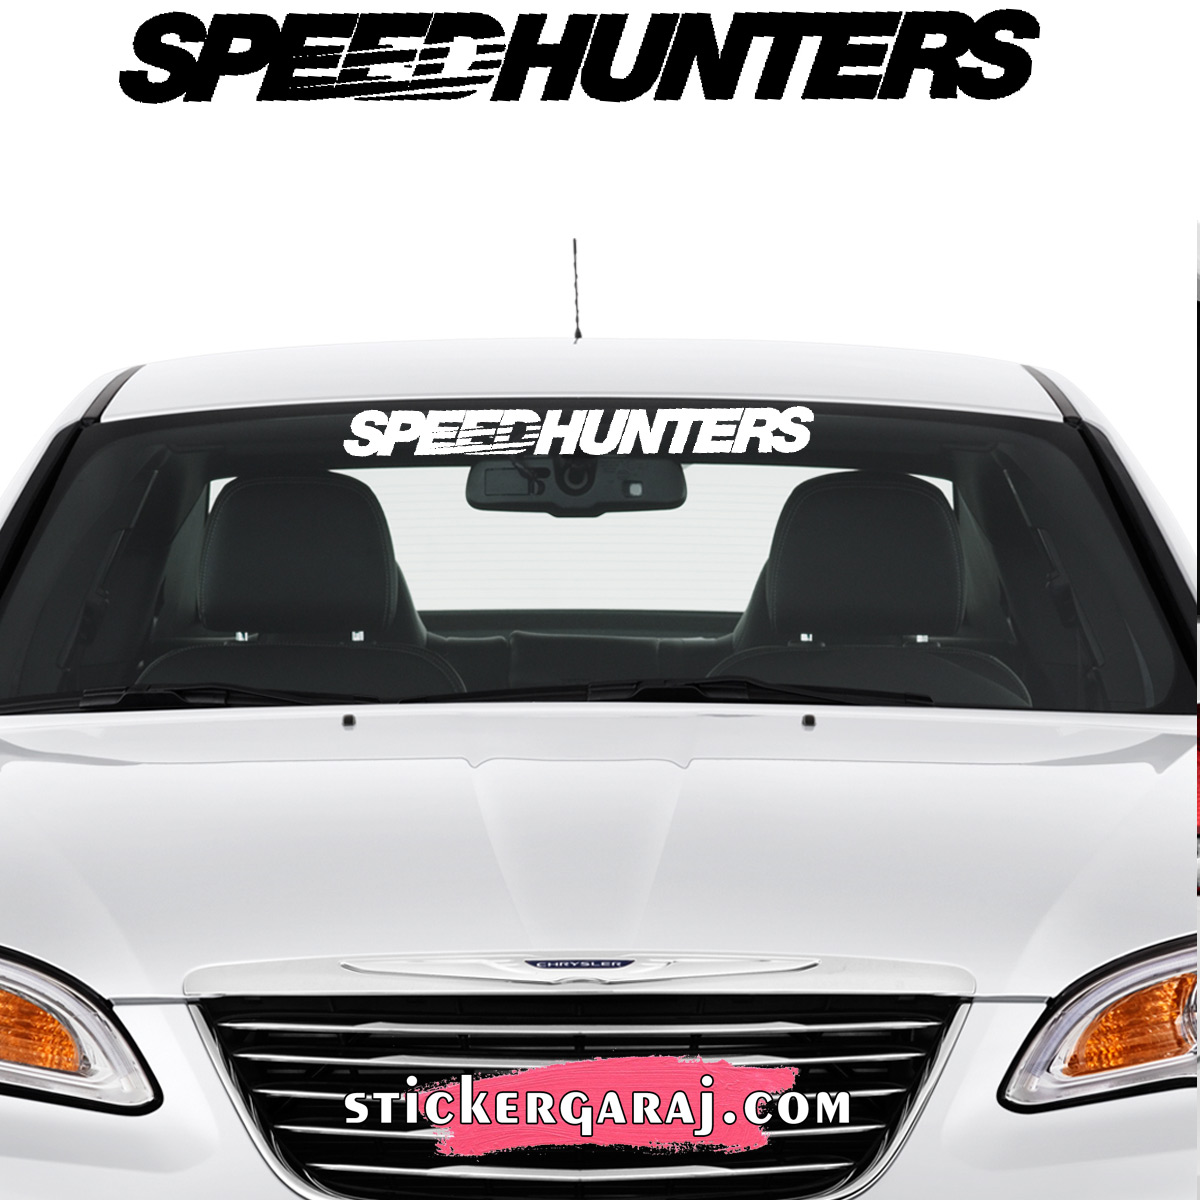 Fiat oto sticker - Fiat cam sticker - speedhunters